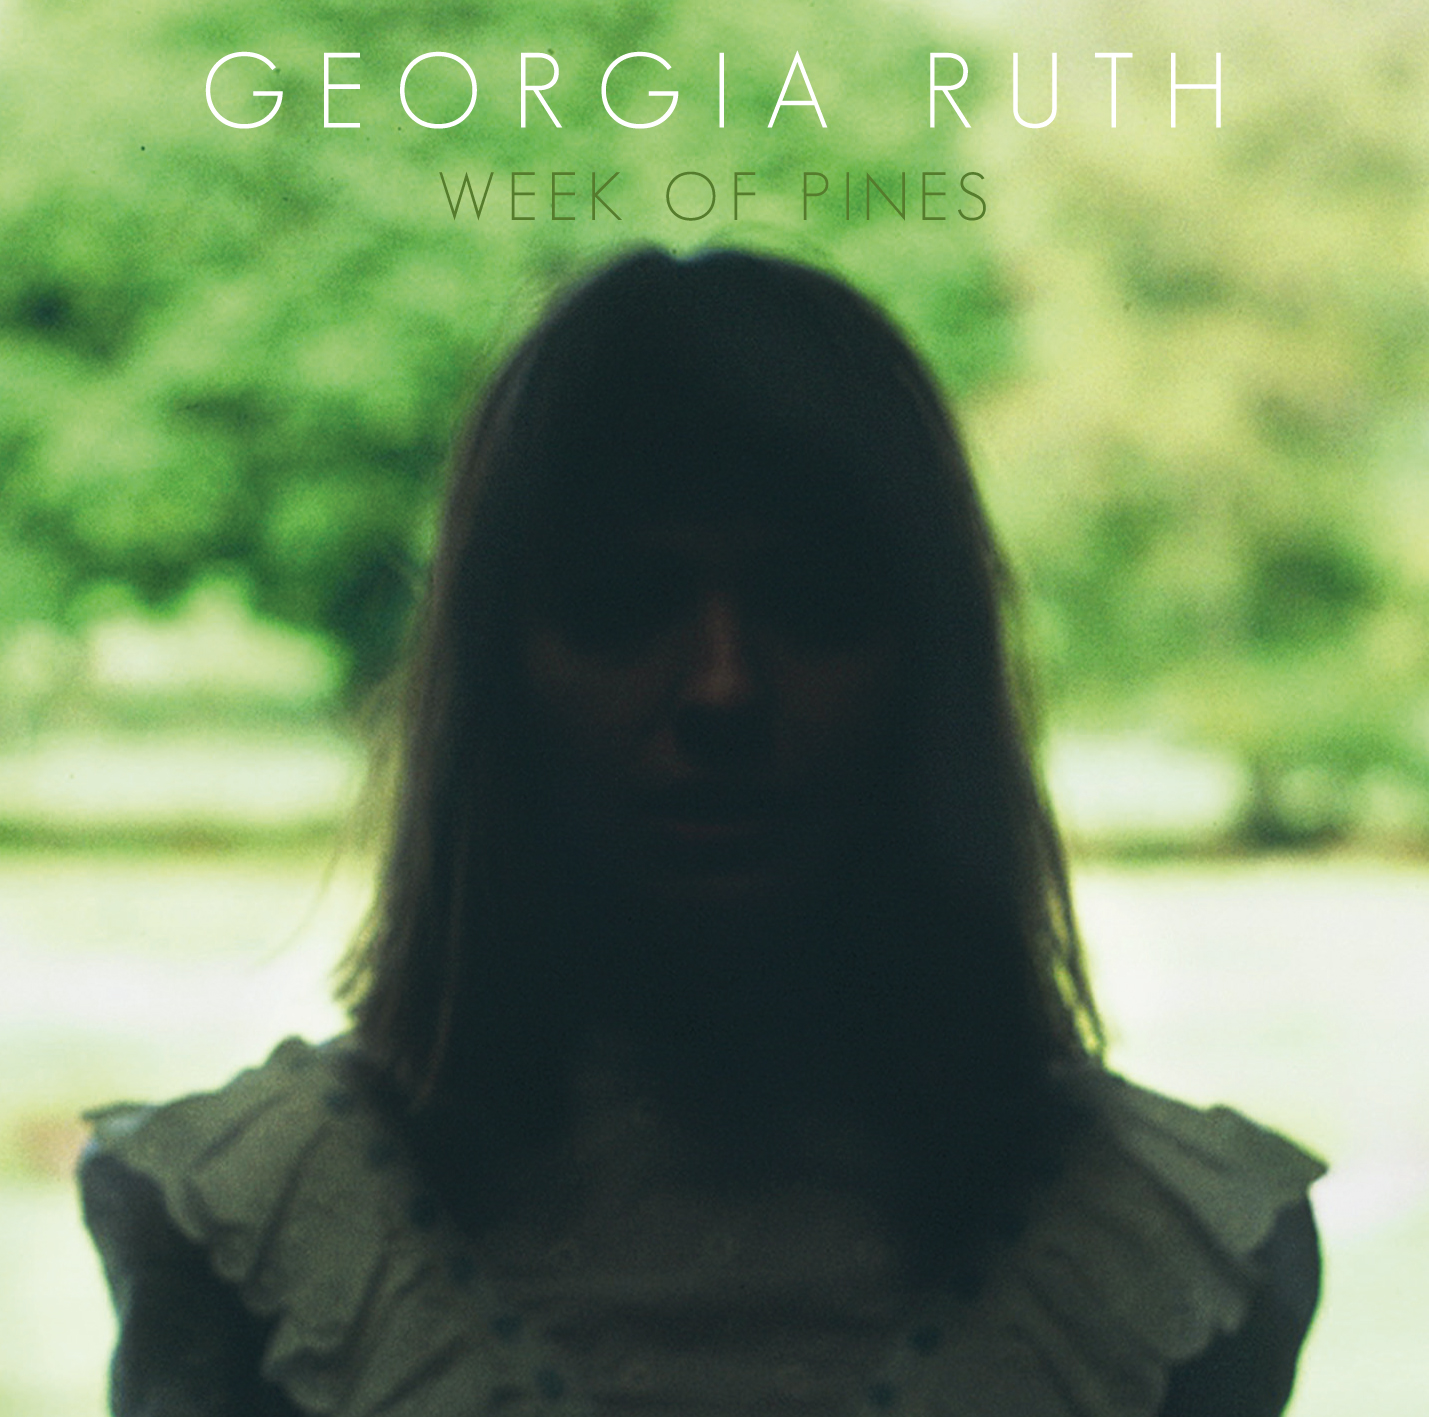 Georgia Ruth Week of Pines